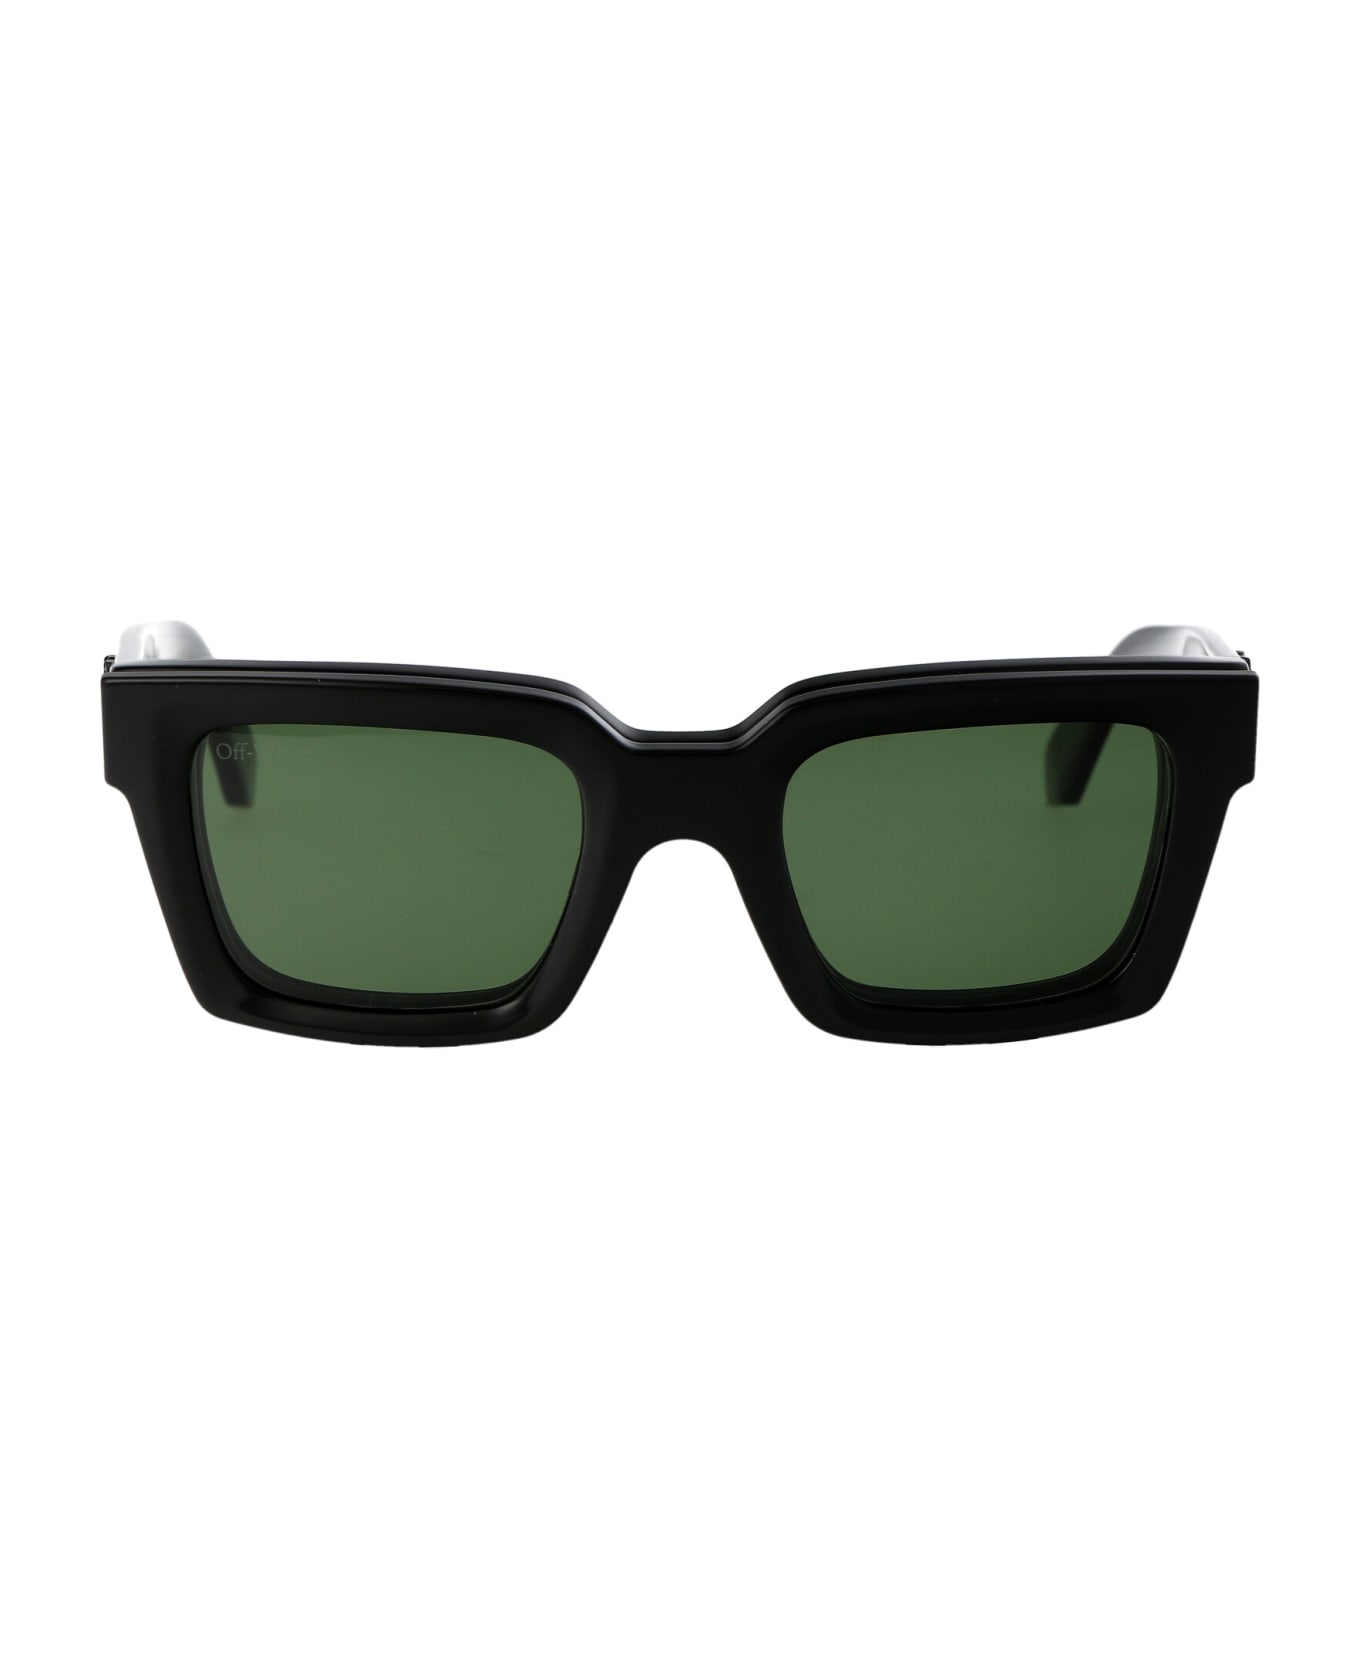 Off-White Clip On Sunglasses - 1055 BLACK